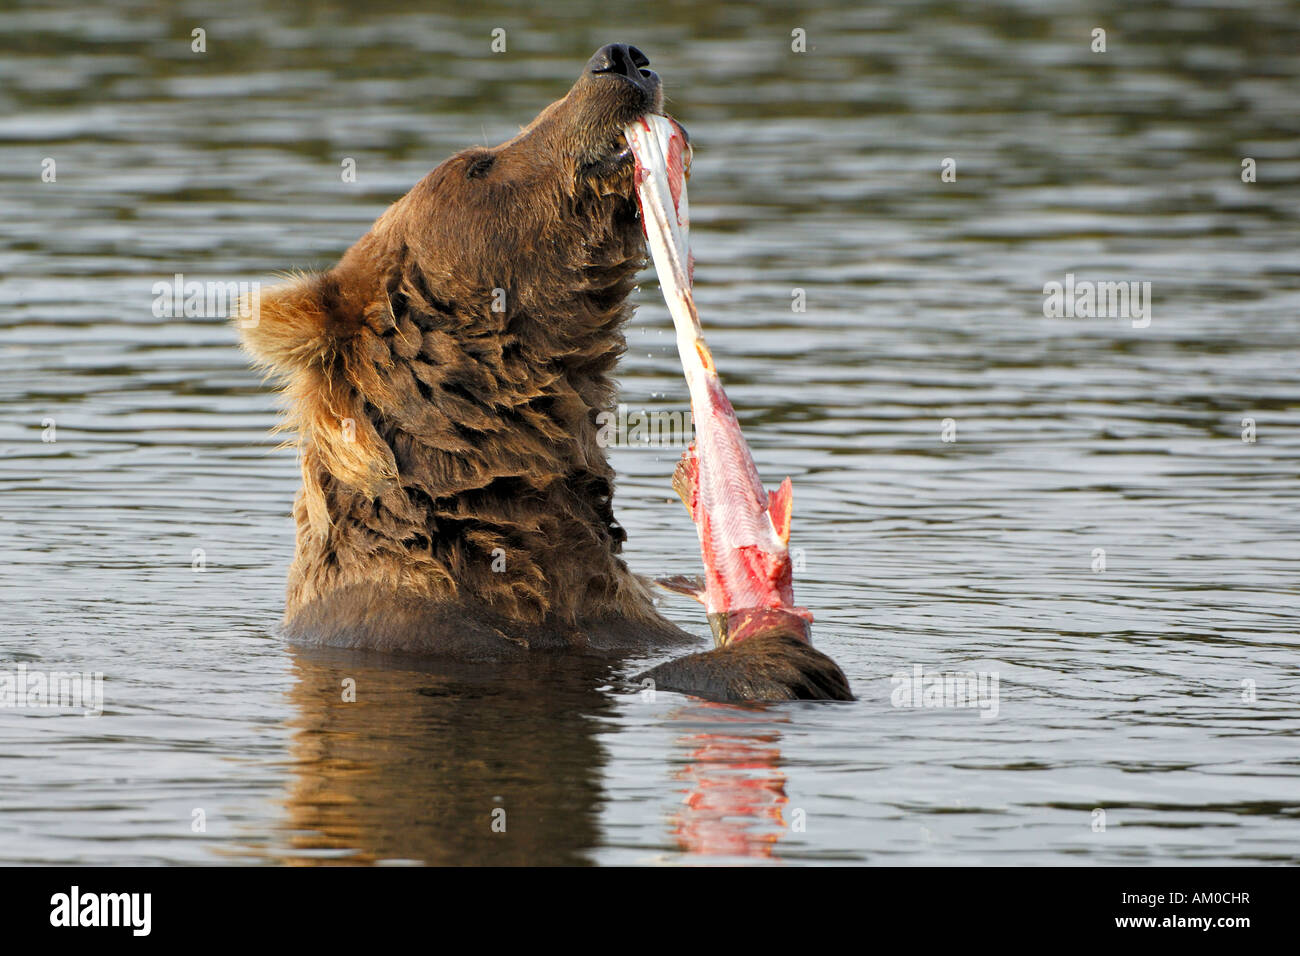 Alaska brown bear (Ursus arctos) eating salmon Stock Photo